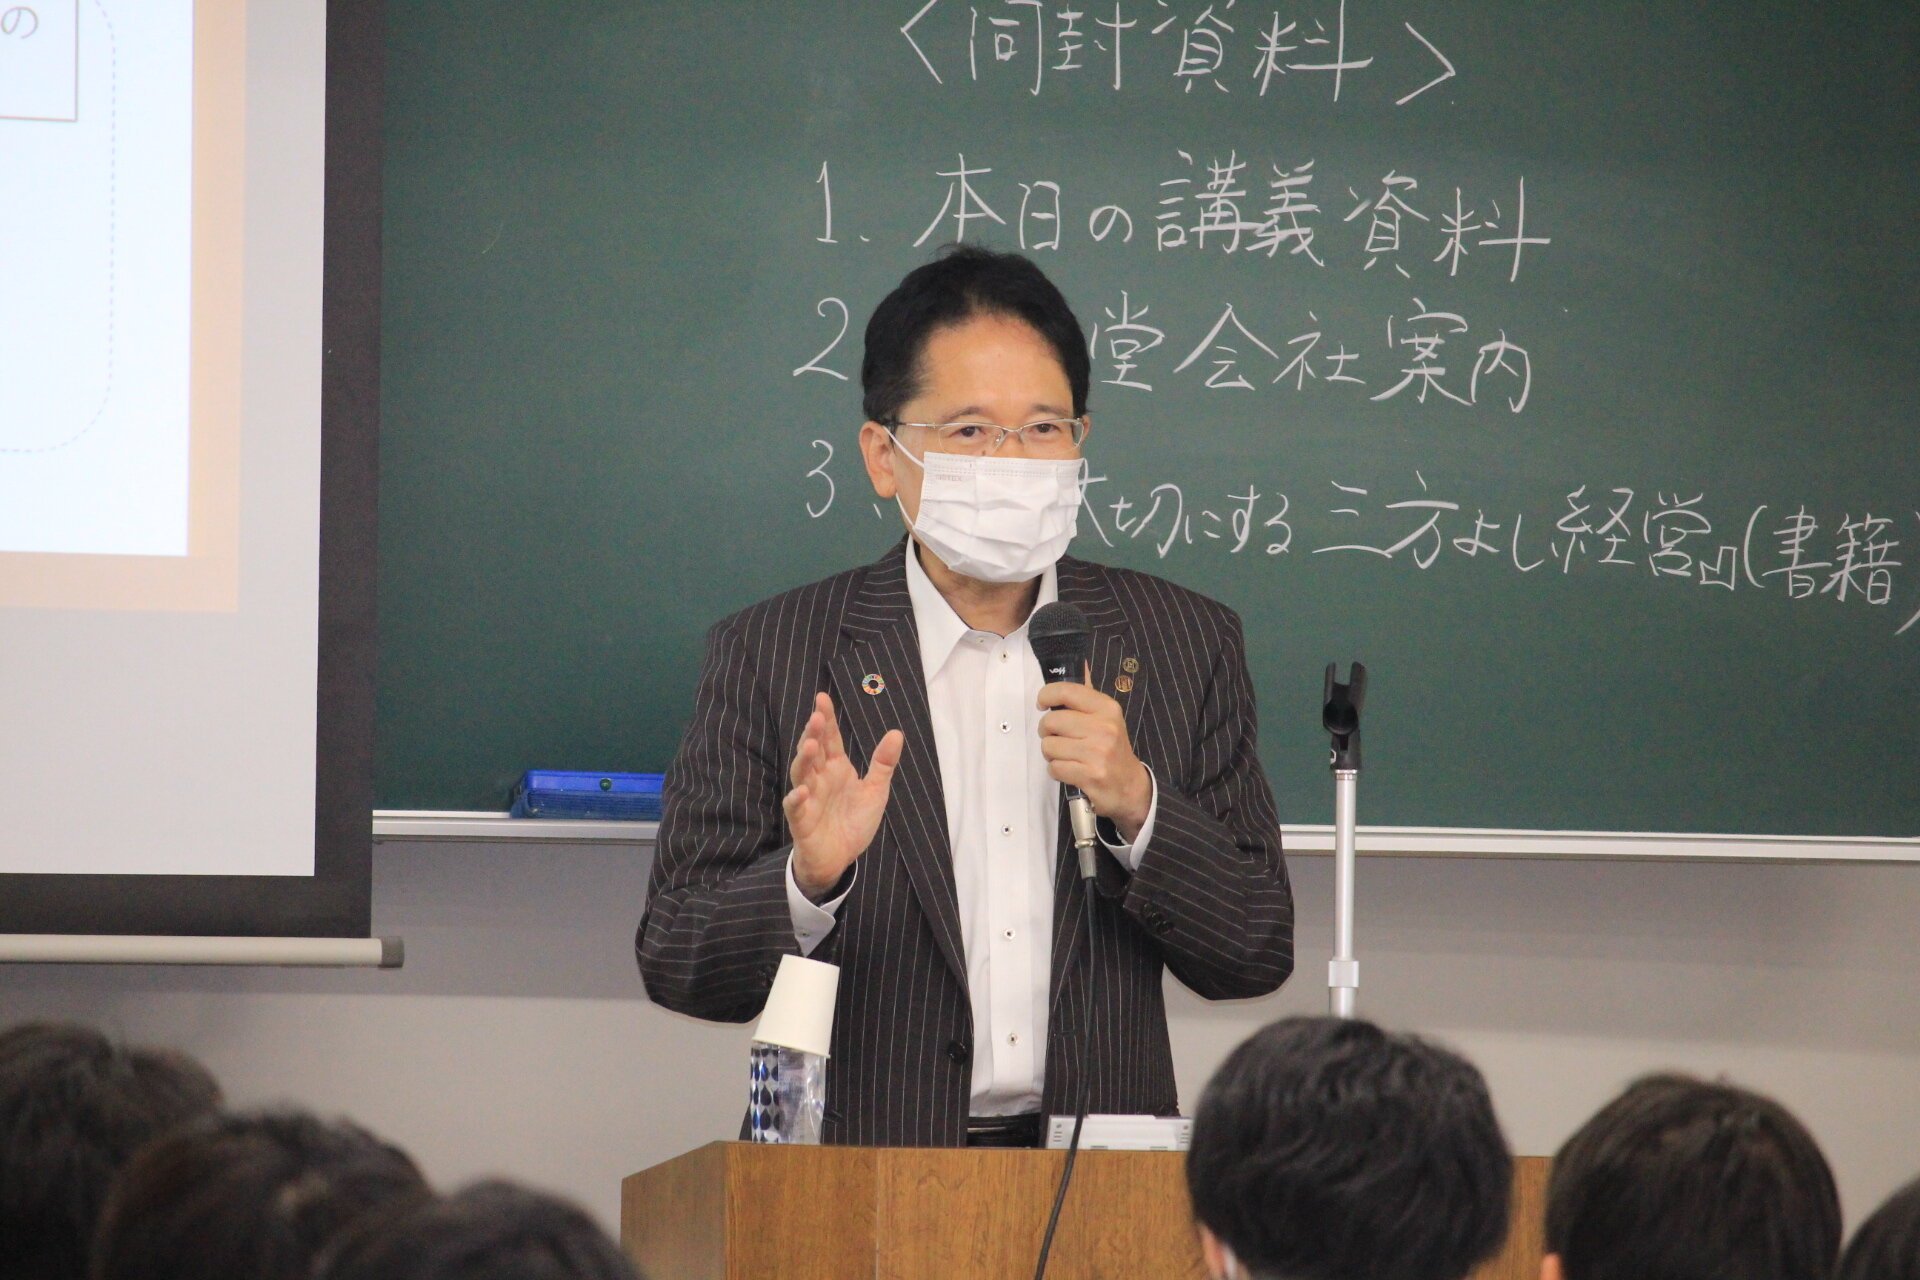 【開催報告】「道徳経営論A」で森光孝雅氏の特別講義を開催